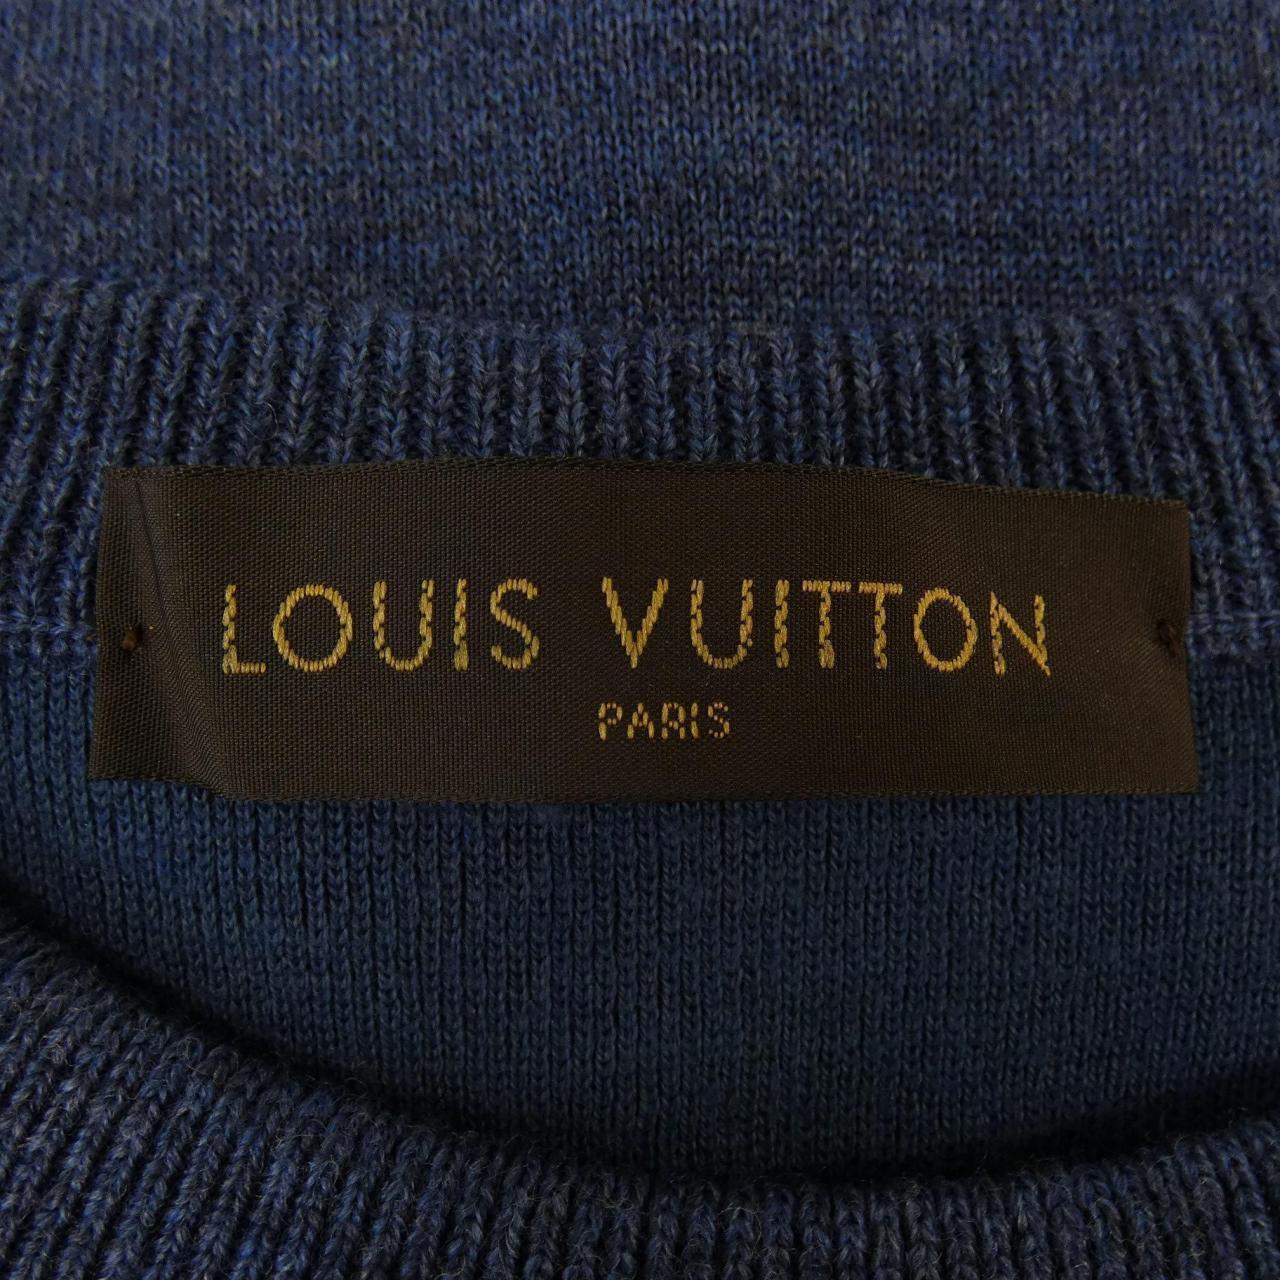 Authentic Louis Vuitton Knit LV Monogram Sweater - Depop